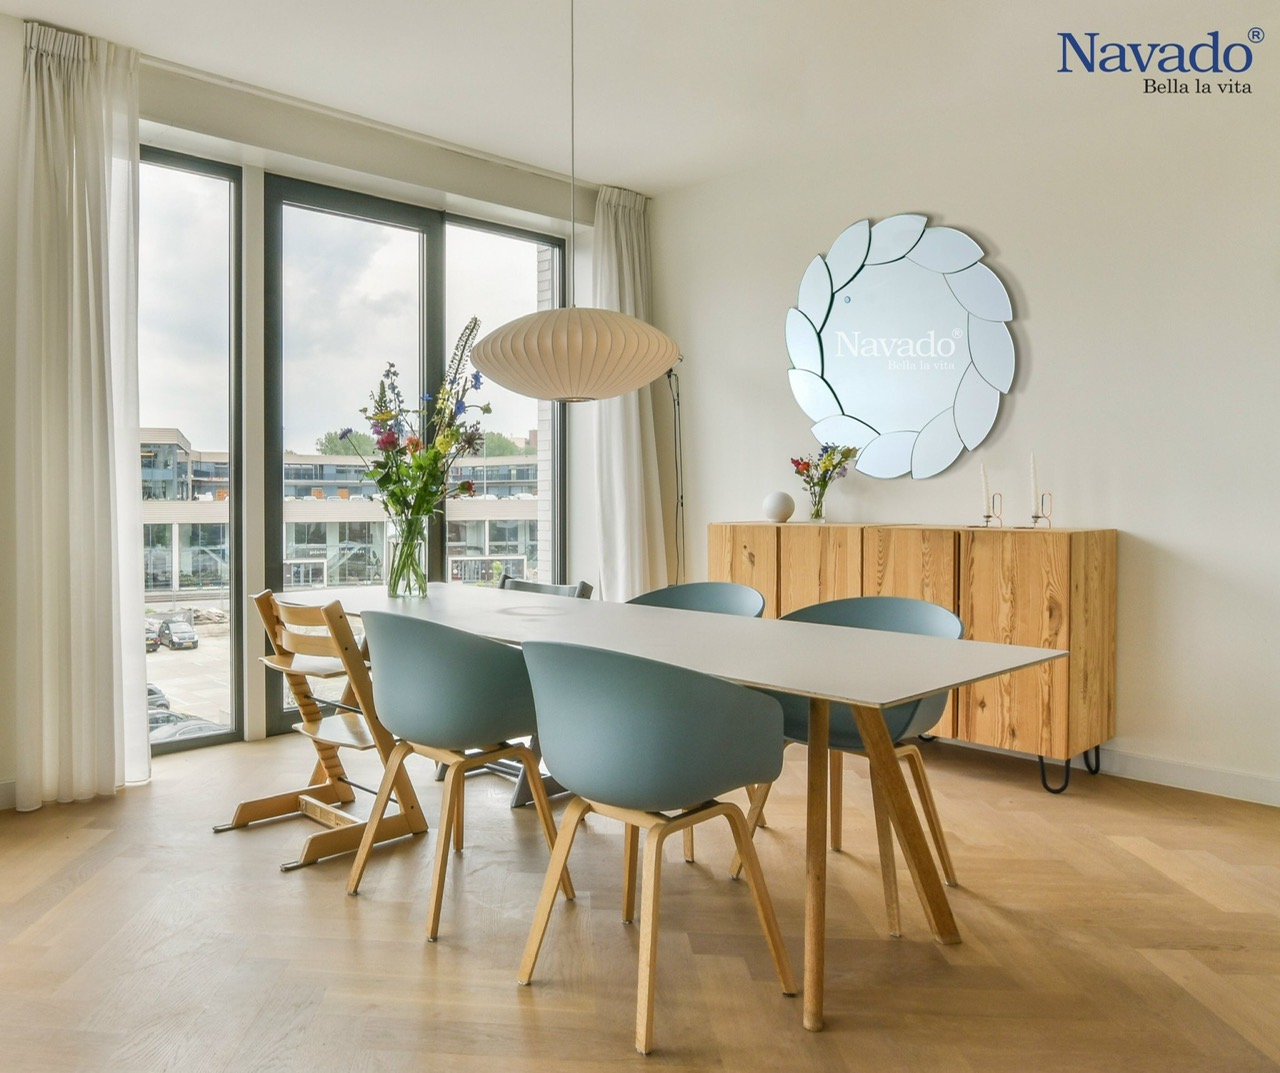 Gương decor Navado cho trang trí phòng khách cao cấp